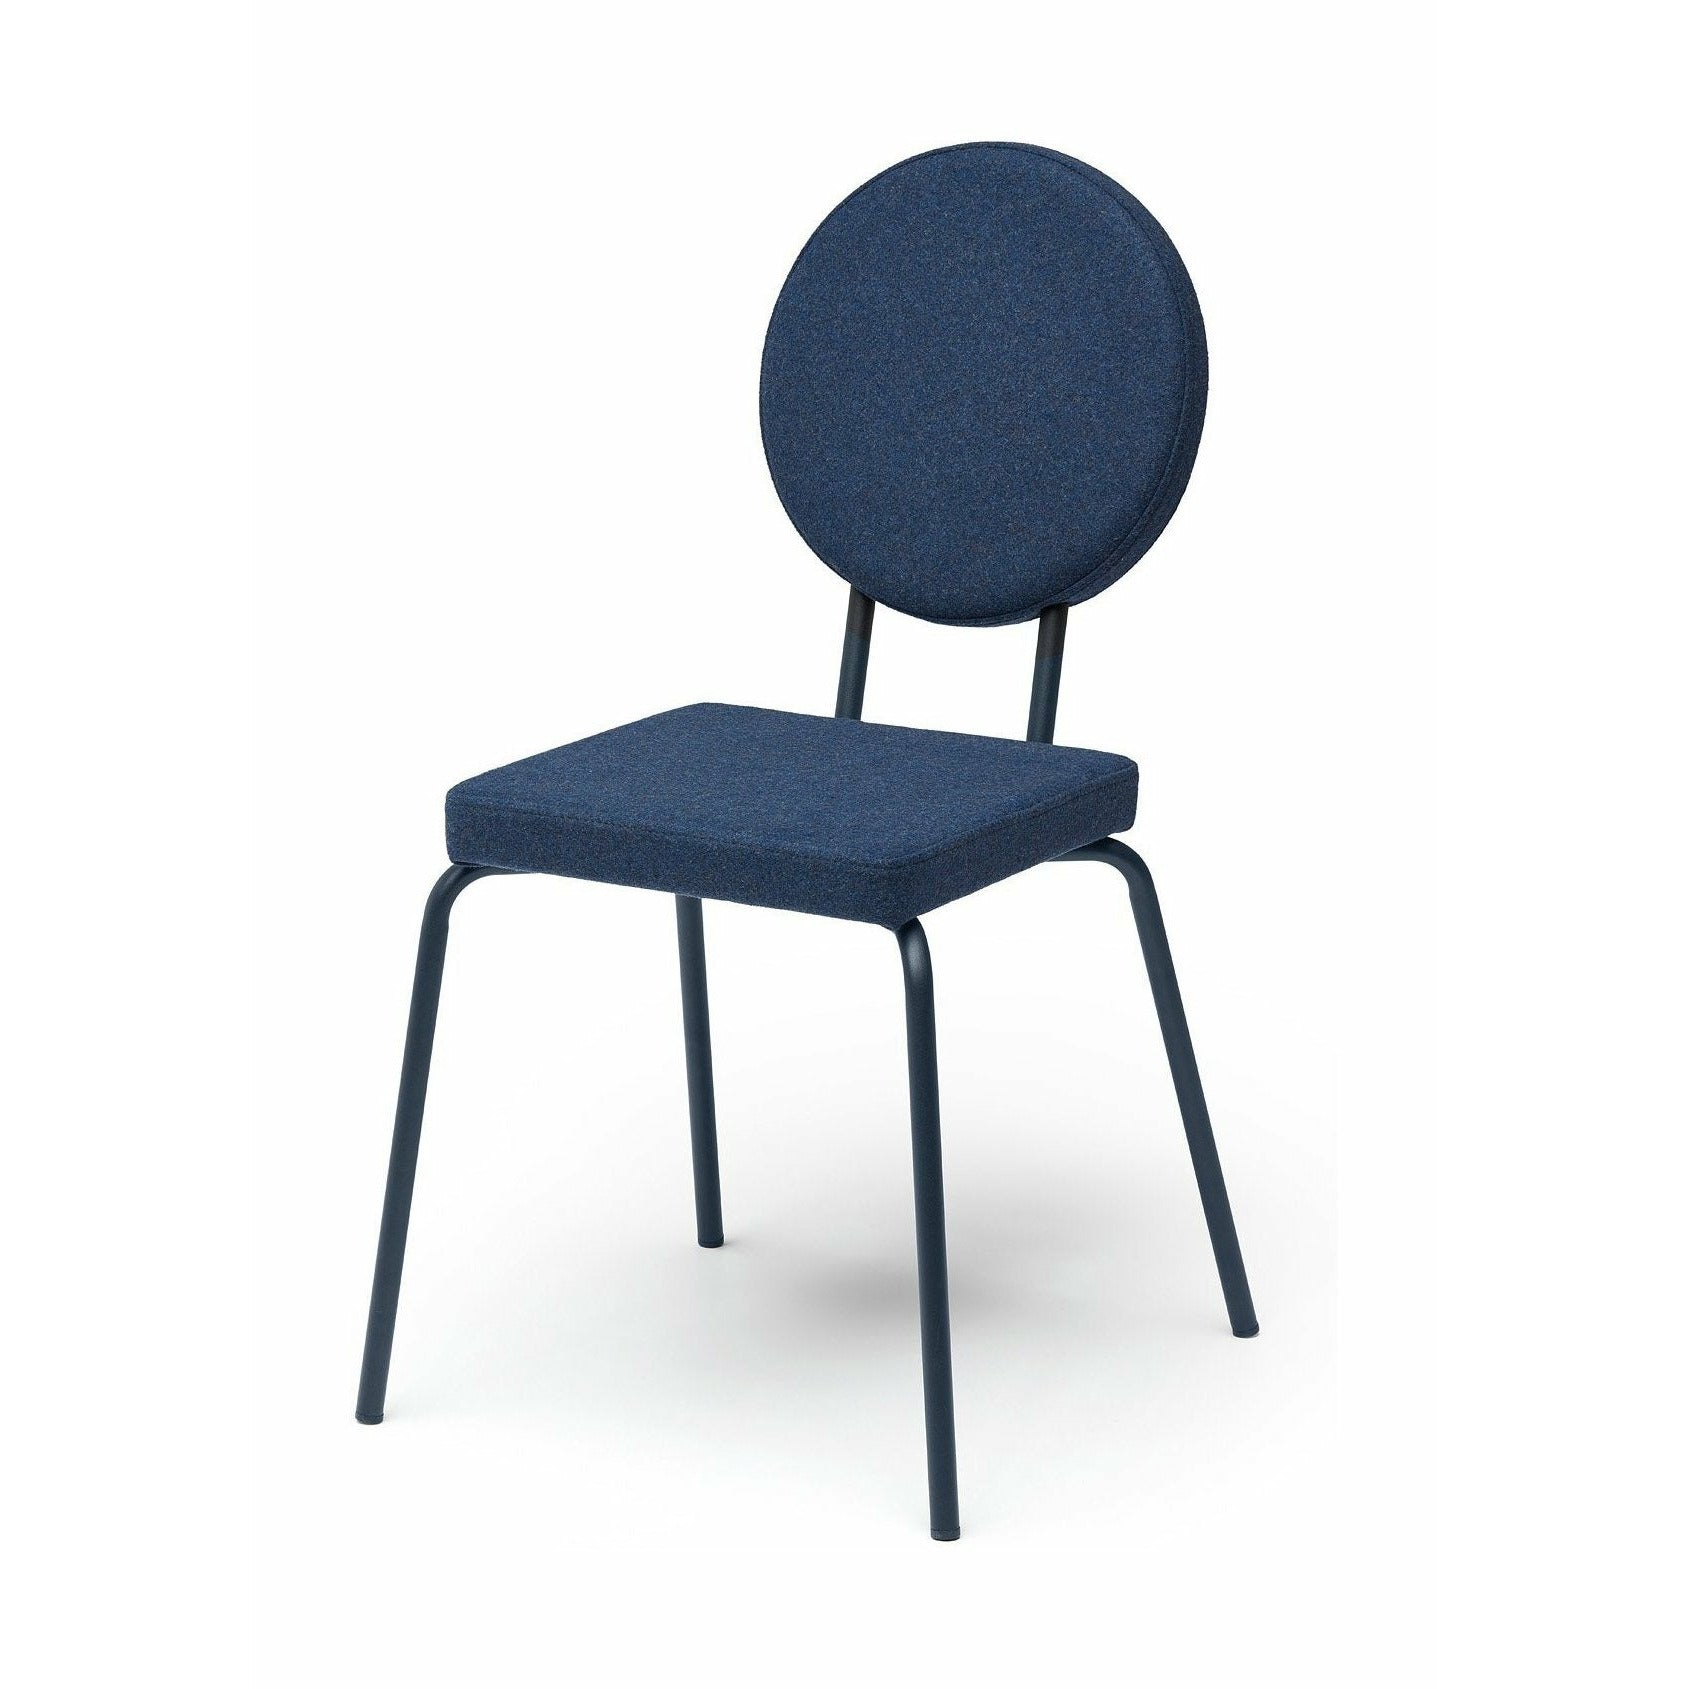 Sedia opzione puik sedile quadrato / schienale round, blu scuro